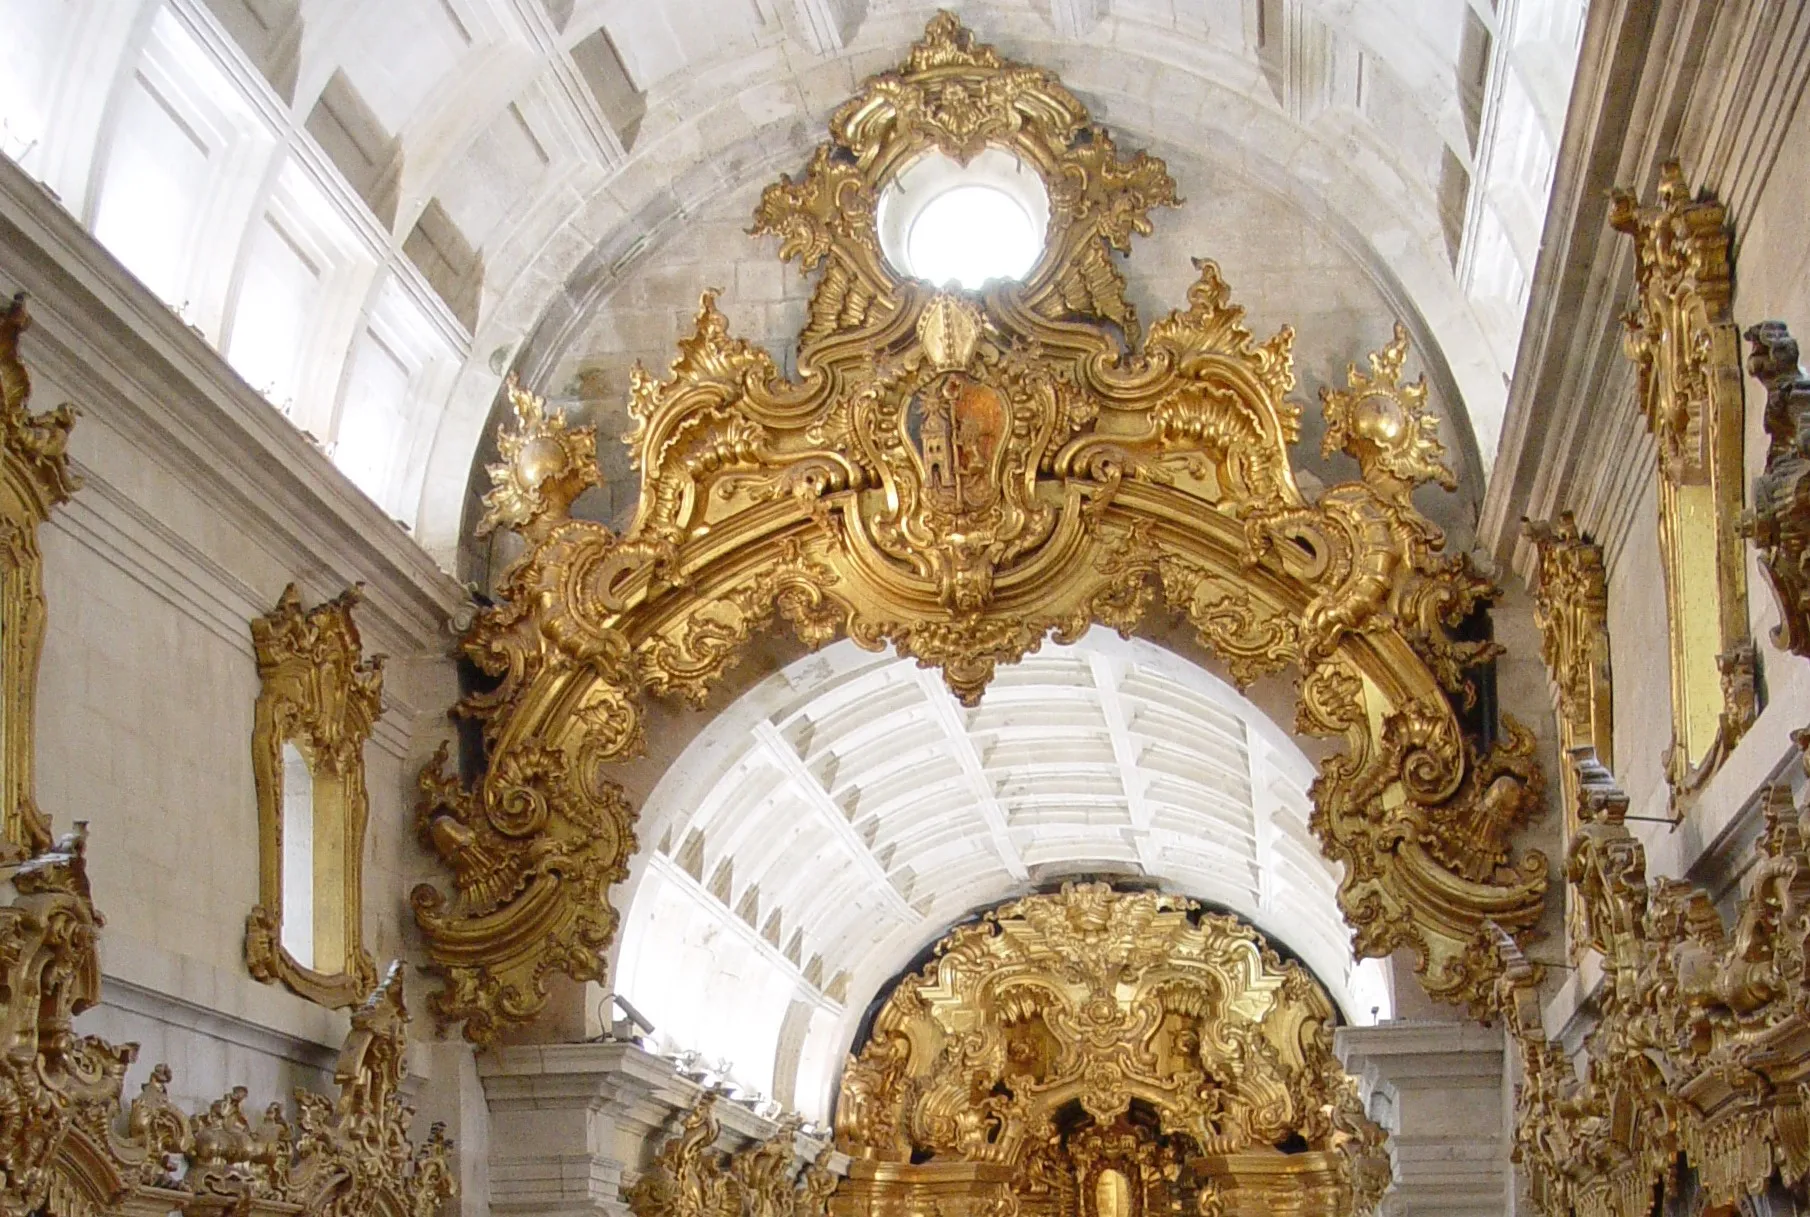 Détail du décor de l'église du monastère de São Martinho de Tibães, Mire de Tibães, Braga, nord du Portugal. Extrait d'une photo de Joseolgon CC BY-SA 3.0